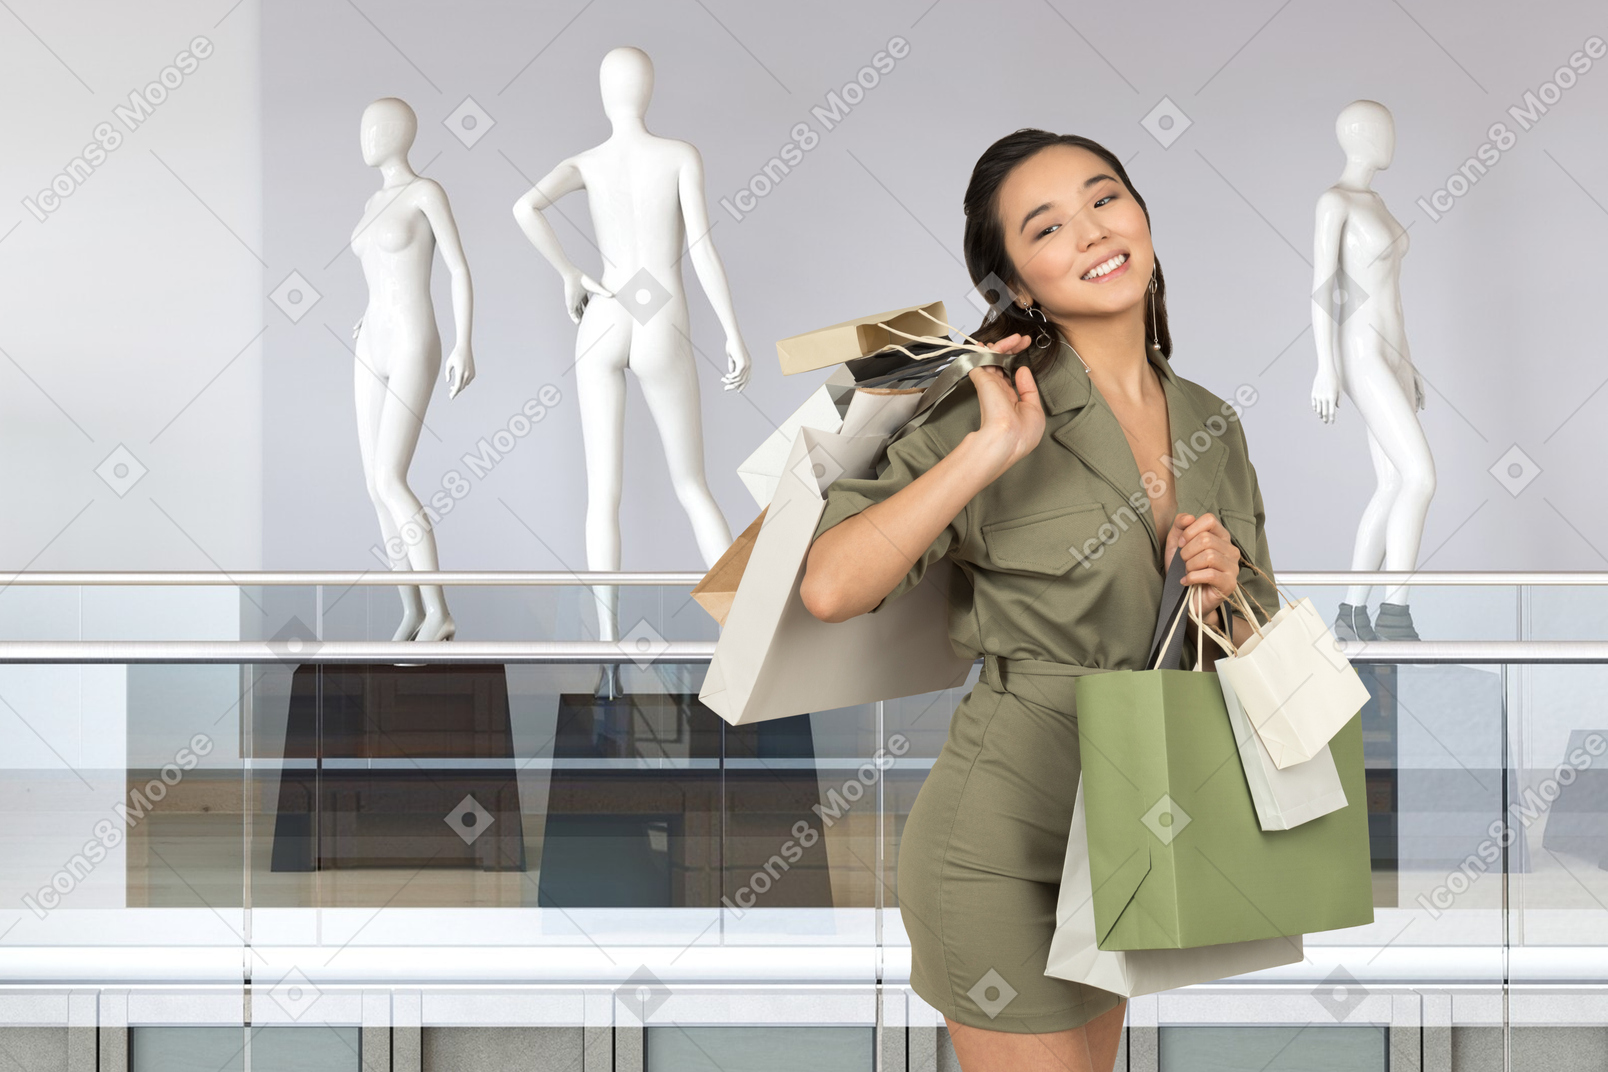 쇼핑몰에서 쇼핑백을 든 젊은 여성